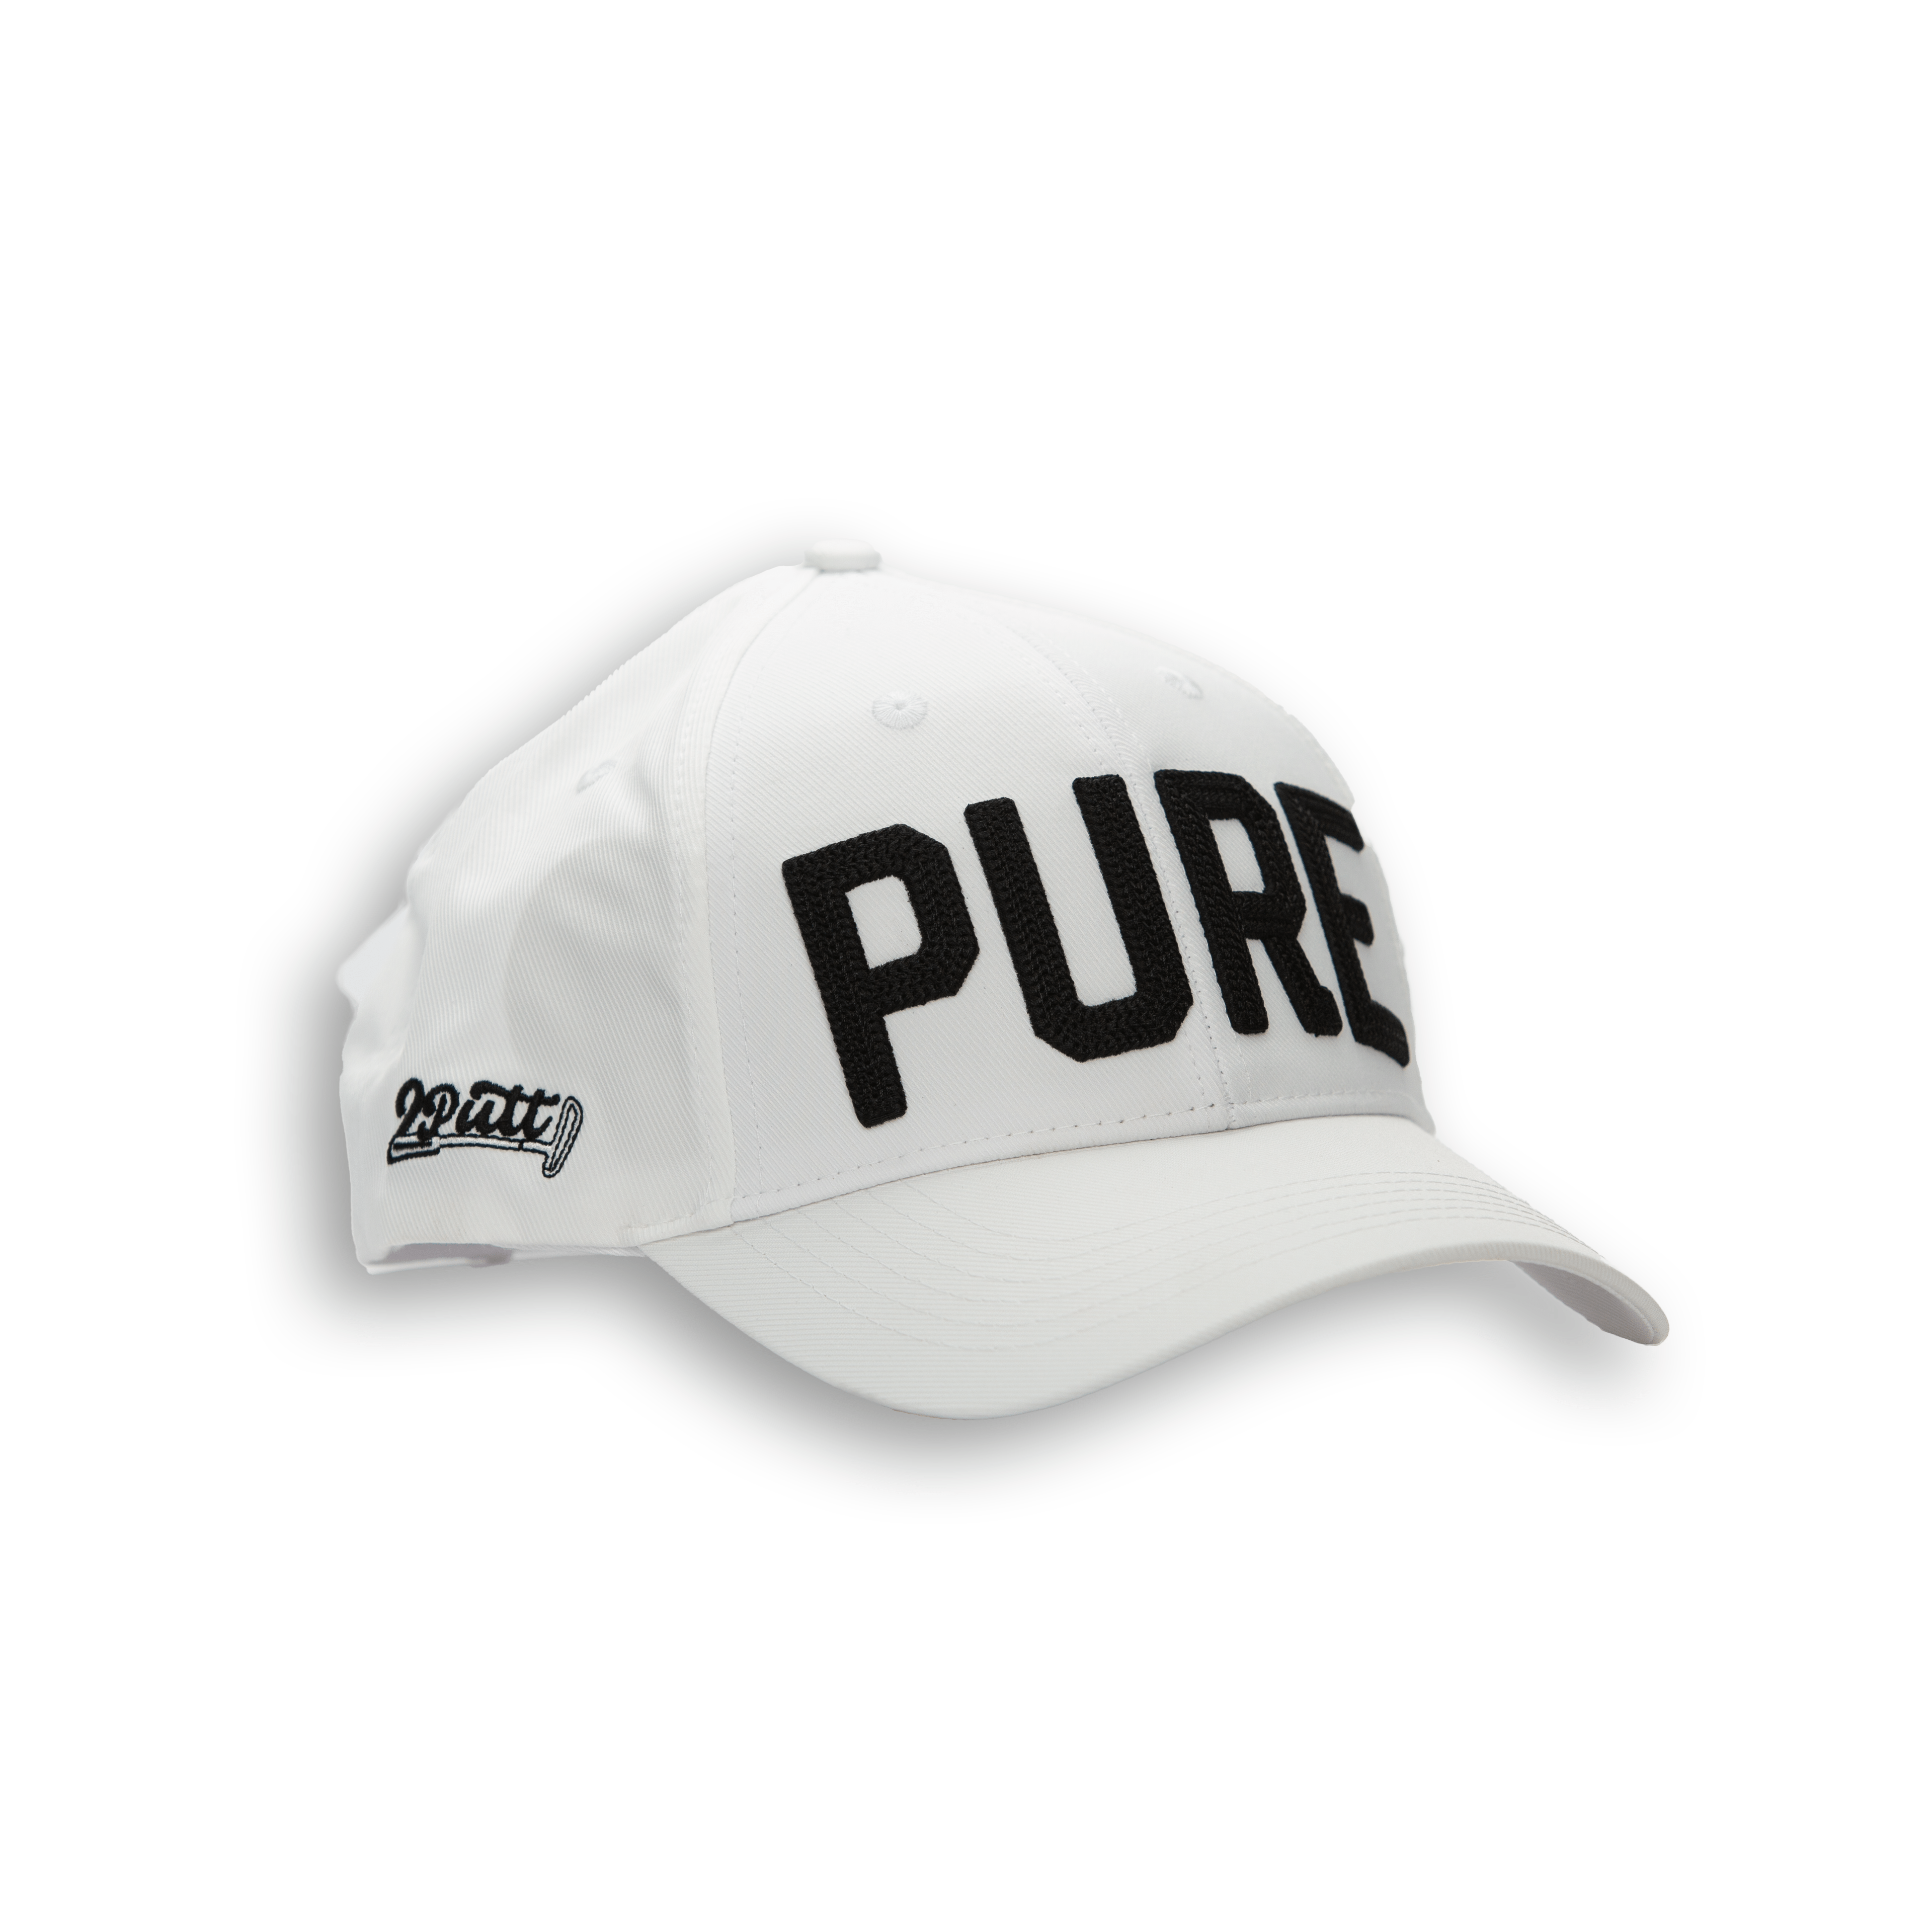 PURE Hat - 2putt